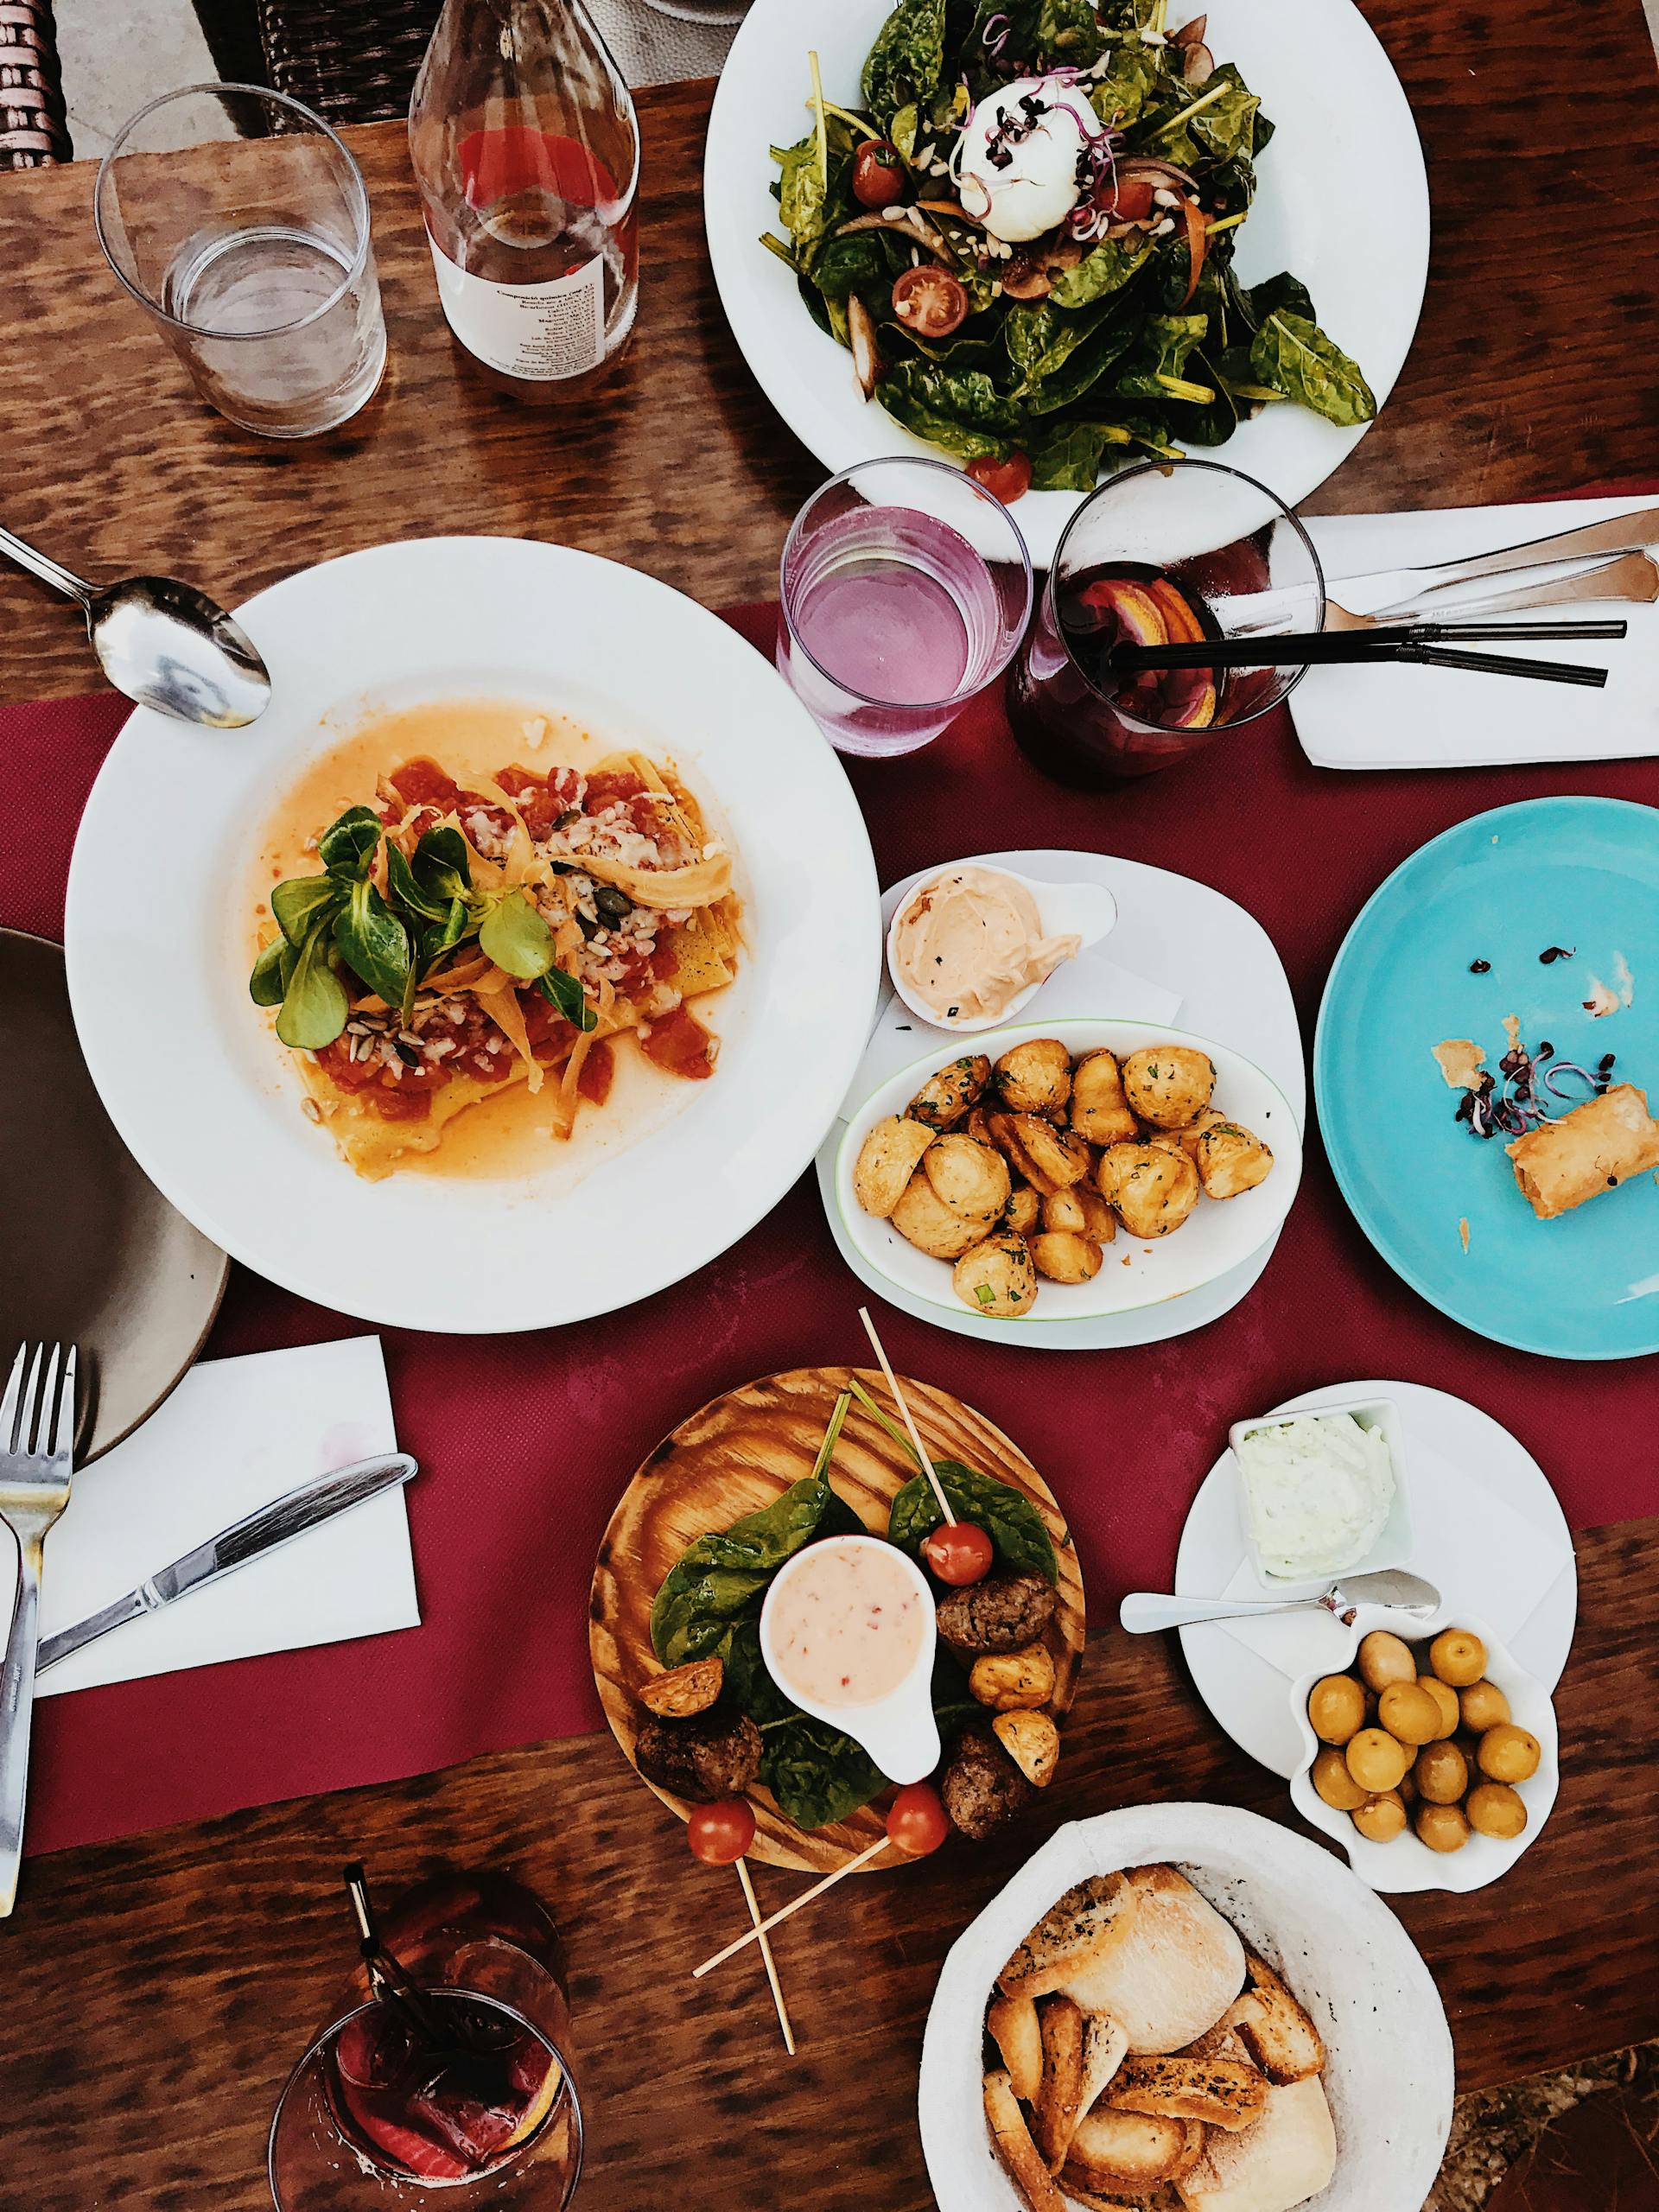 Nourriture servie sur la table | Source : Pexels